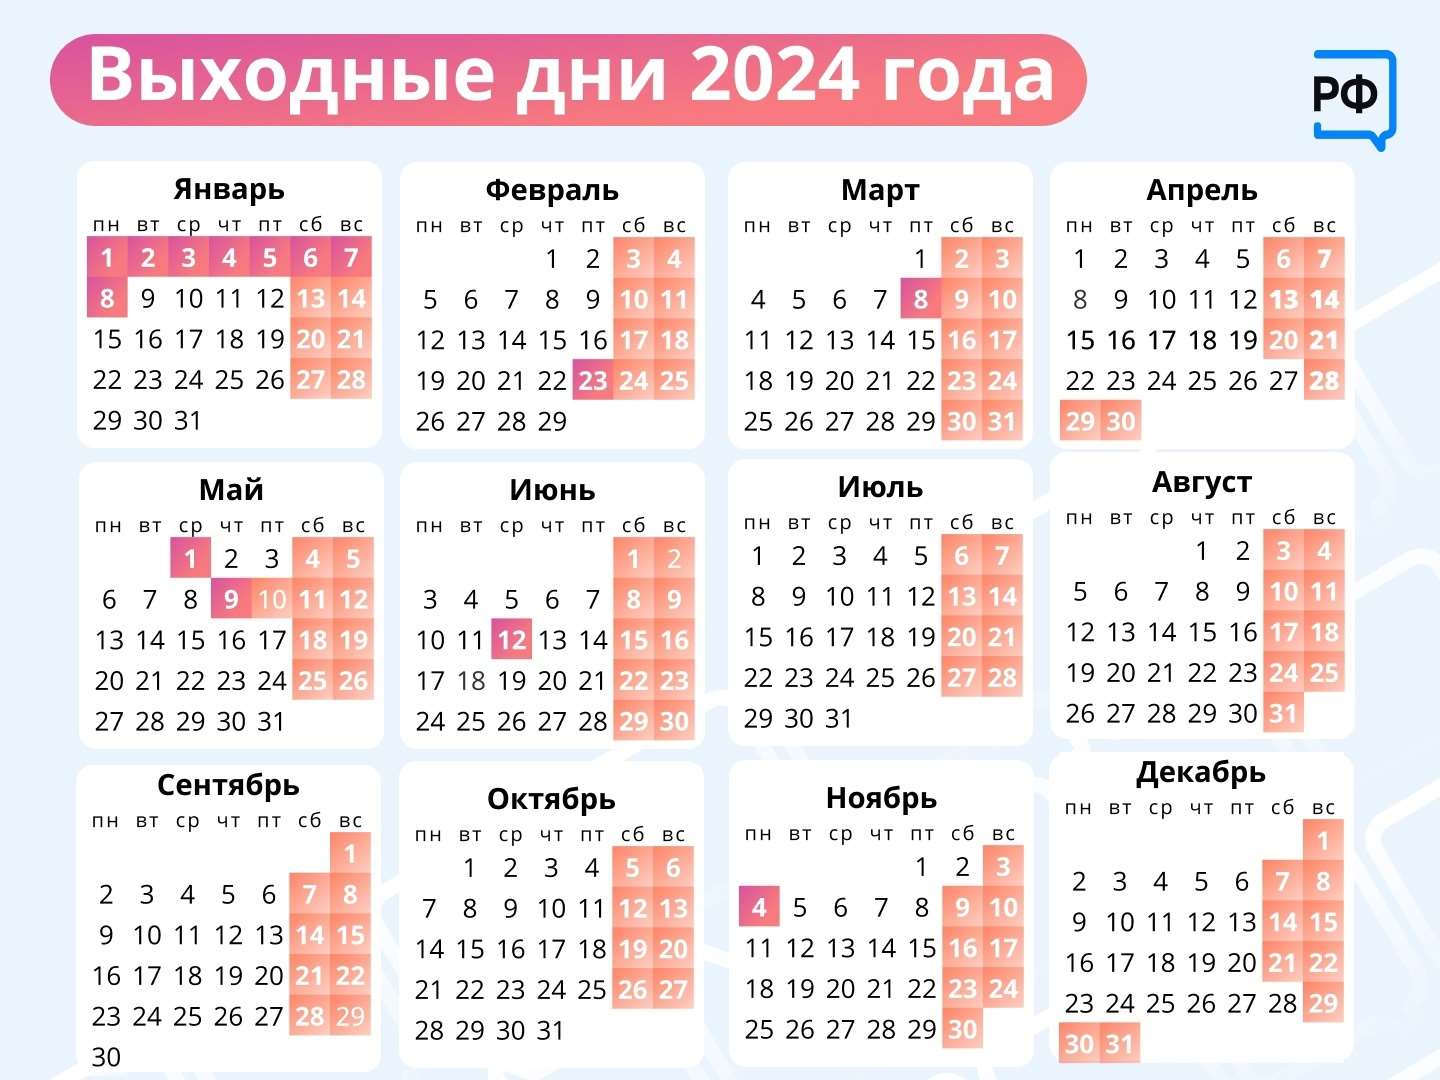 Календарь праздников рабочих дней на 2024 год